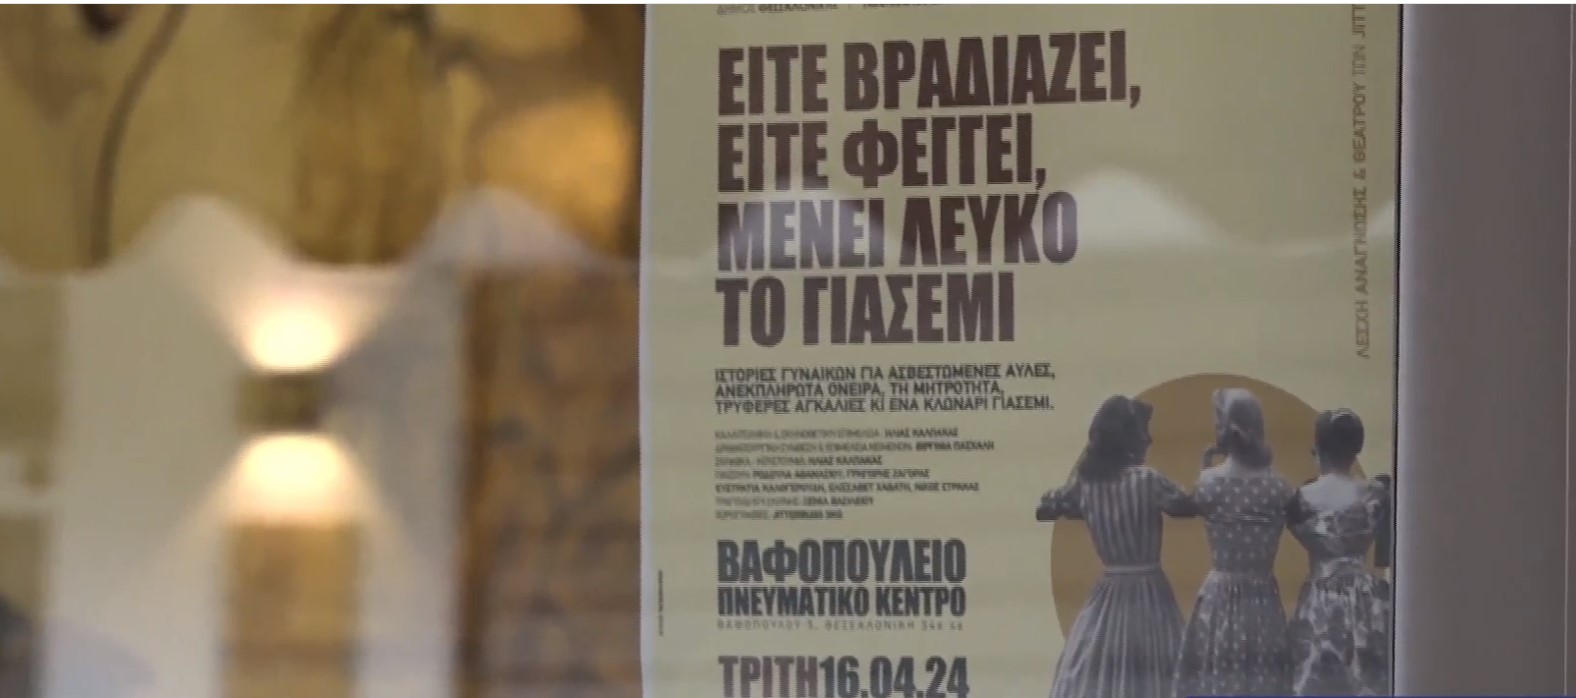 «Είτε βραδιάζει, είτε φέγγει, μένει λευκό το γιασεμί»- Μια θεατρική παράσταση με ιστορίες γυναικών στο Βαφοπούλειο Πνευματικό Κέντρο